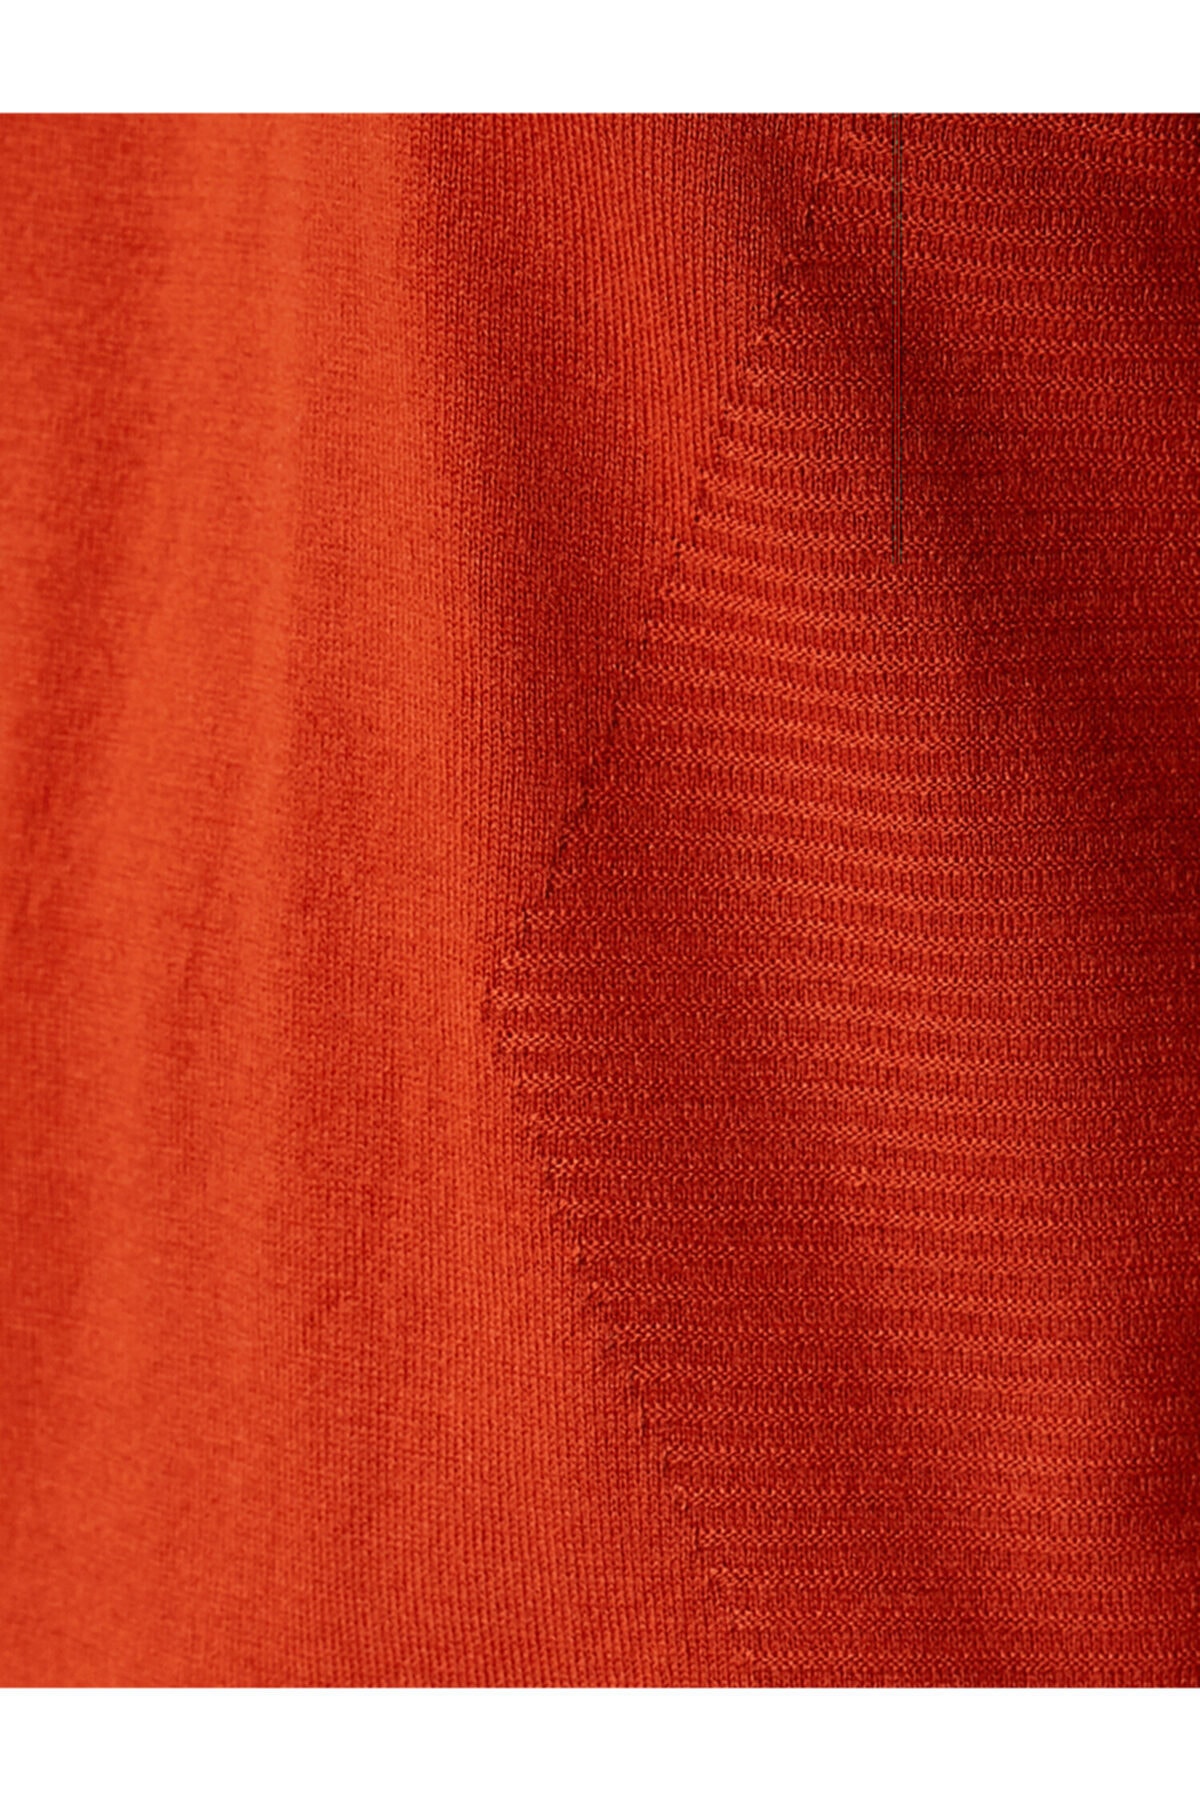 Koton Pullover Orange Regular Fit Fast ausverkauft